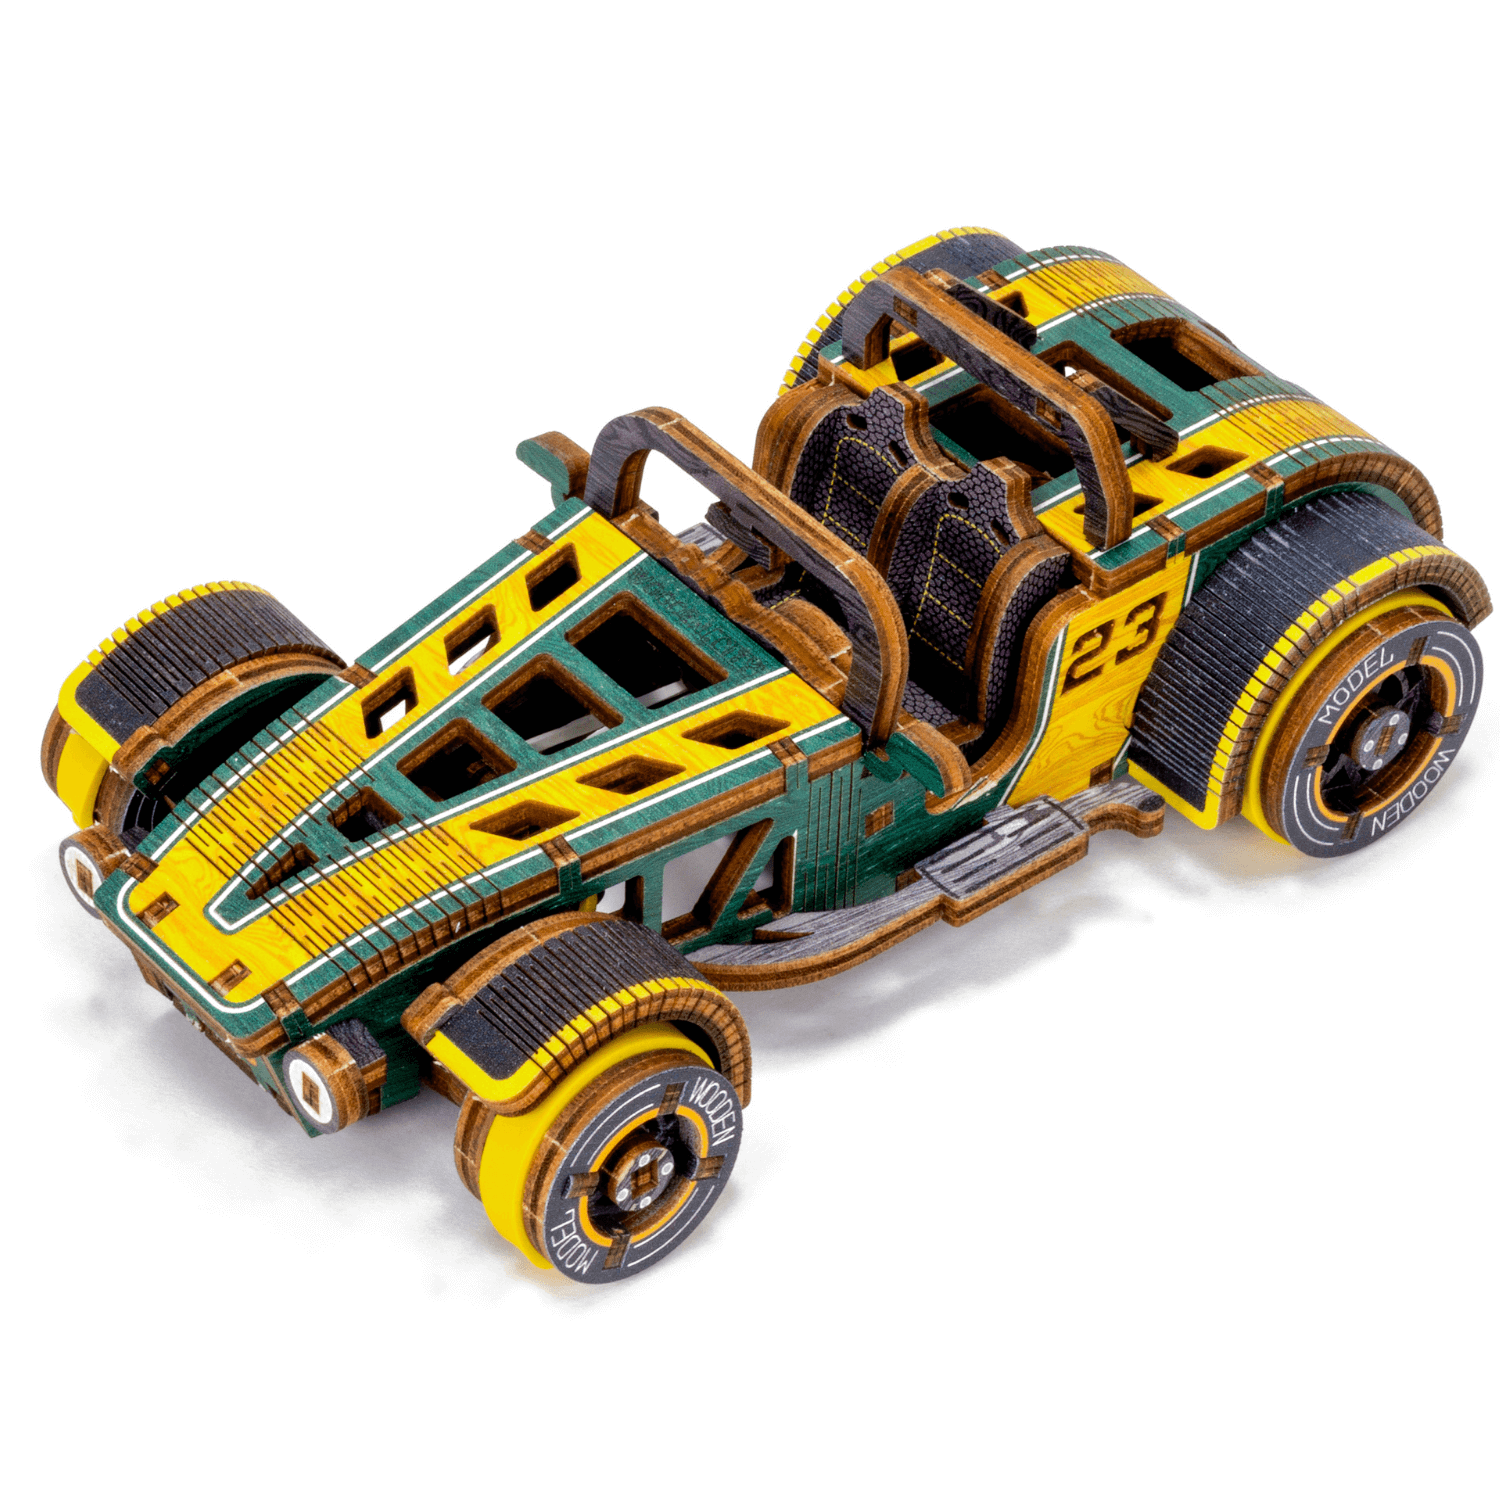 Roadster | Édition limitée-Puzzle mécanique en bois-WoodenCity--